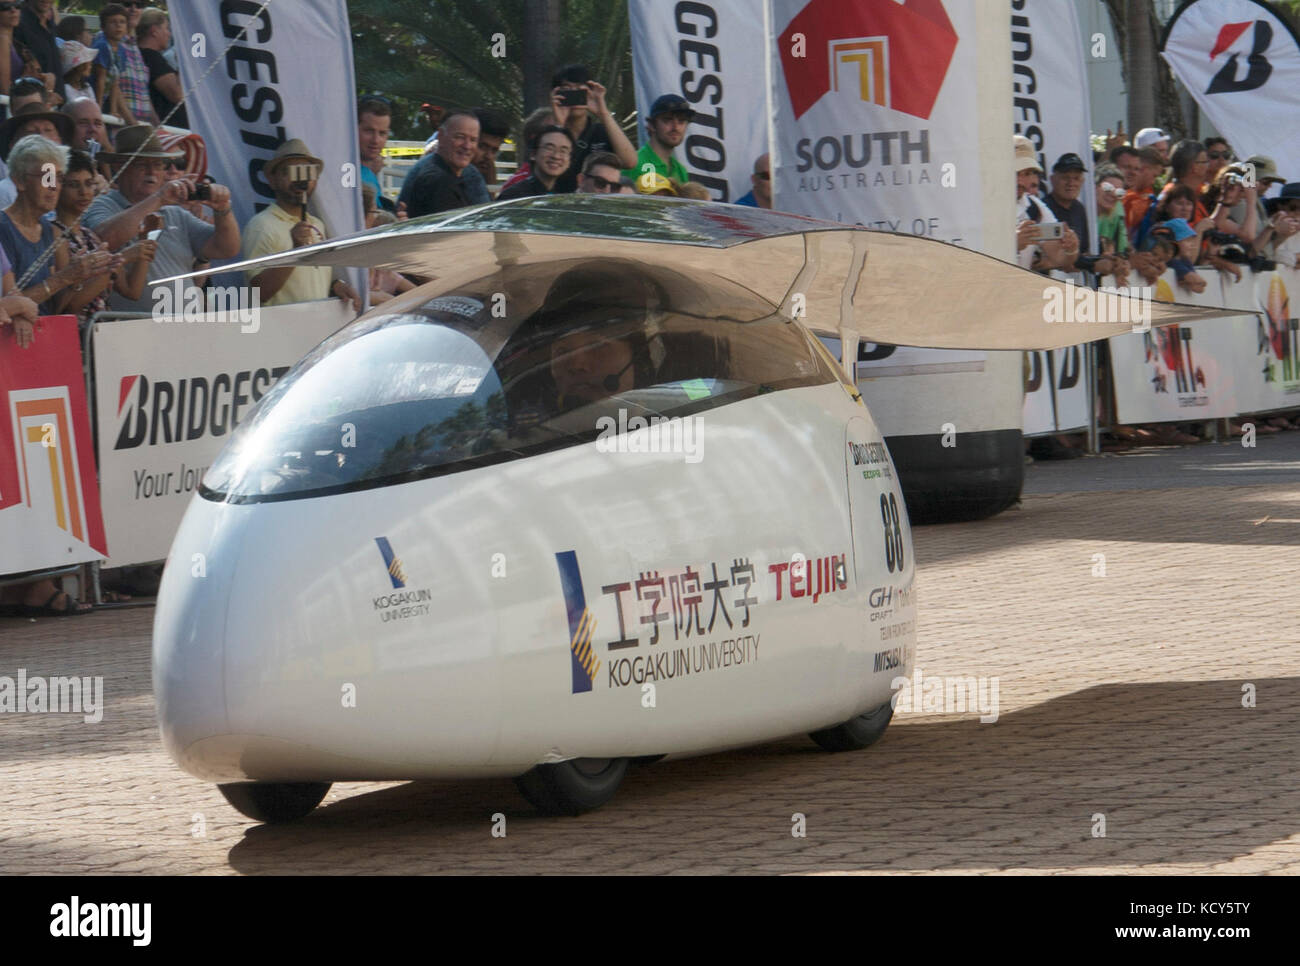 Darwin. 8 oct, 2017. voiture solaire de l'aile du Japon kogakuin university tirets de la ligne de départ au cours de la World Solar Challenge 2017 à Darwin, Australie, le oct. 8, 2017. crédit : xu haijing/Xinhua/Alamy live news Banque D'Images